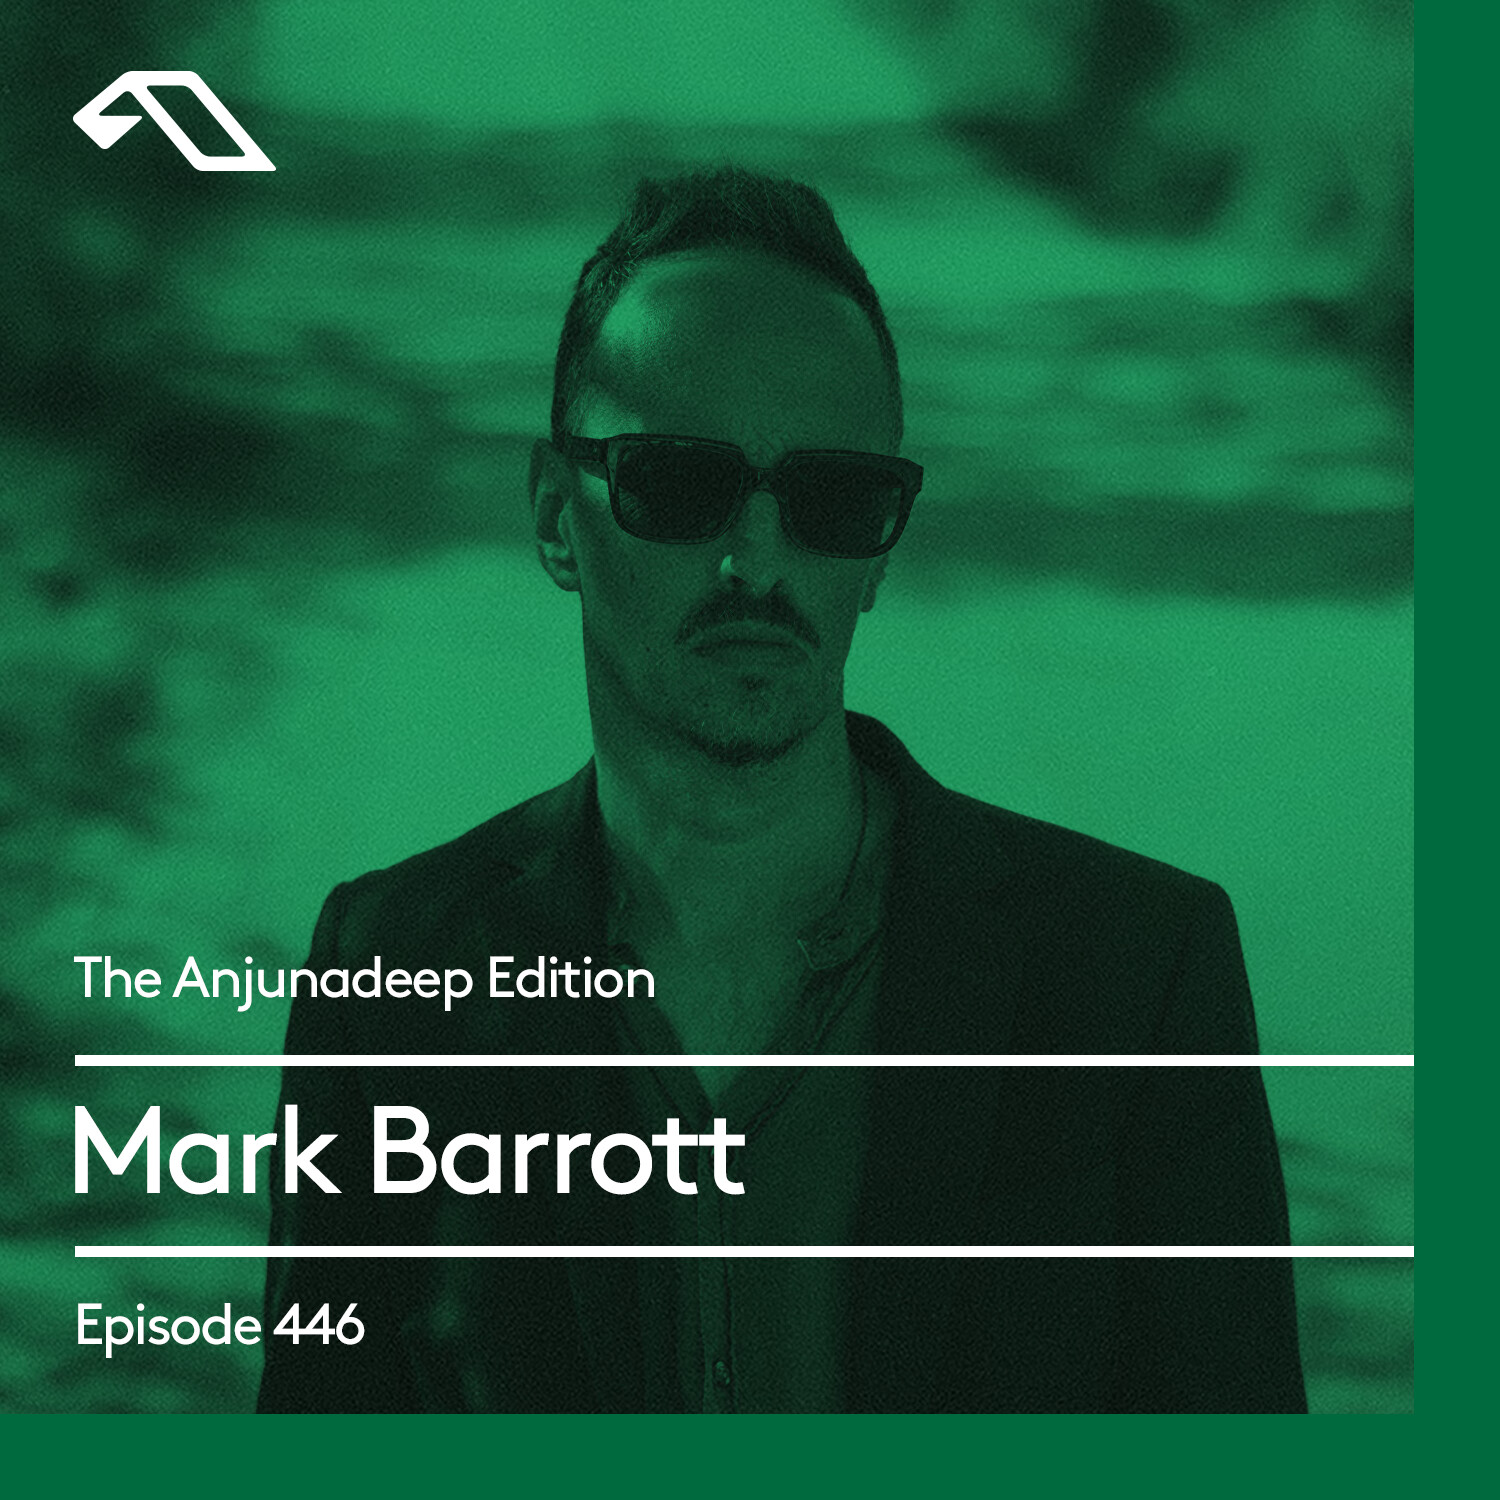 The Anjunadeep Edition 446 with Mark Barrott